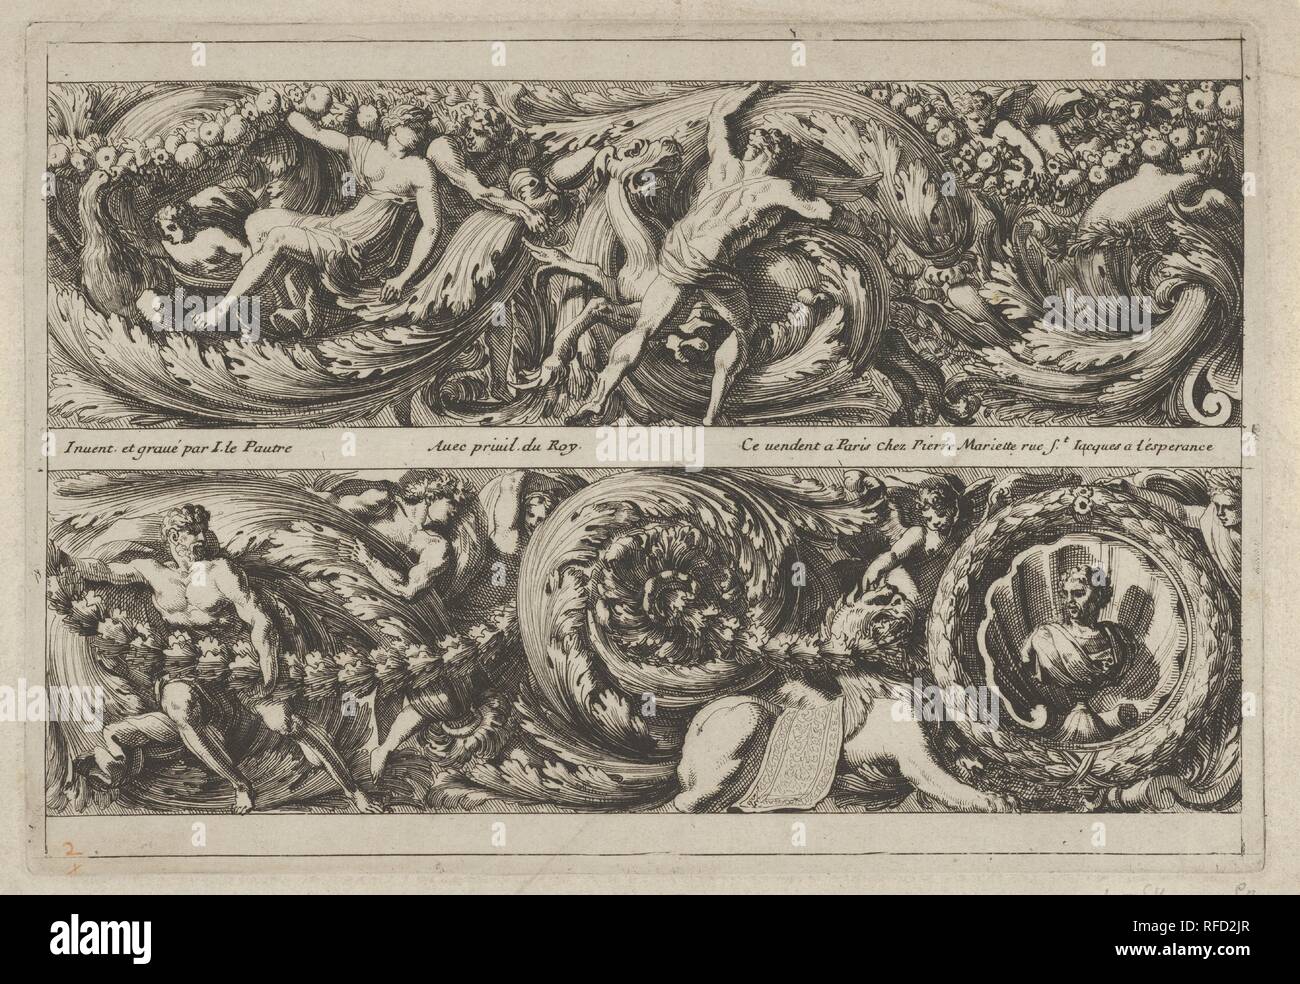 Two Designs for Friezes with Acanthus Scrolls from: Frises, Feuillages ou Tritons Marins à la romaine. Artist: Jean Le Pautre (French, Paris 1618-1682 Paris). Dimensions: sheet: 6 7/16 x 9 1/4 in. (16.3 x 23.5 cm)  plate: 5 13/16 x 8 11/16 in. (14.8 x 22 cm). Publisher: Pierre Mariette le fils (French, Paris 1634-1716 Paris). Date: ca. 1640-82. Museum: Metropolitan Museum of Art, New York, USA. Stock Photo